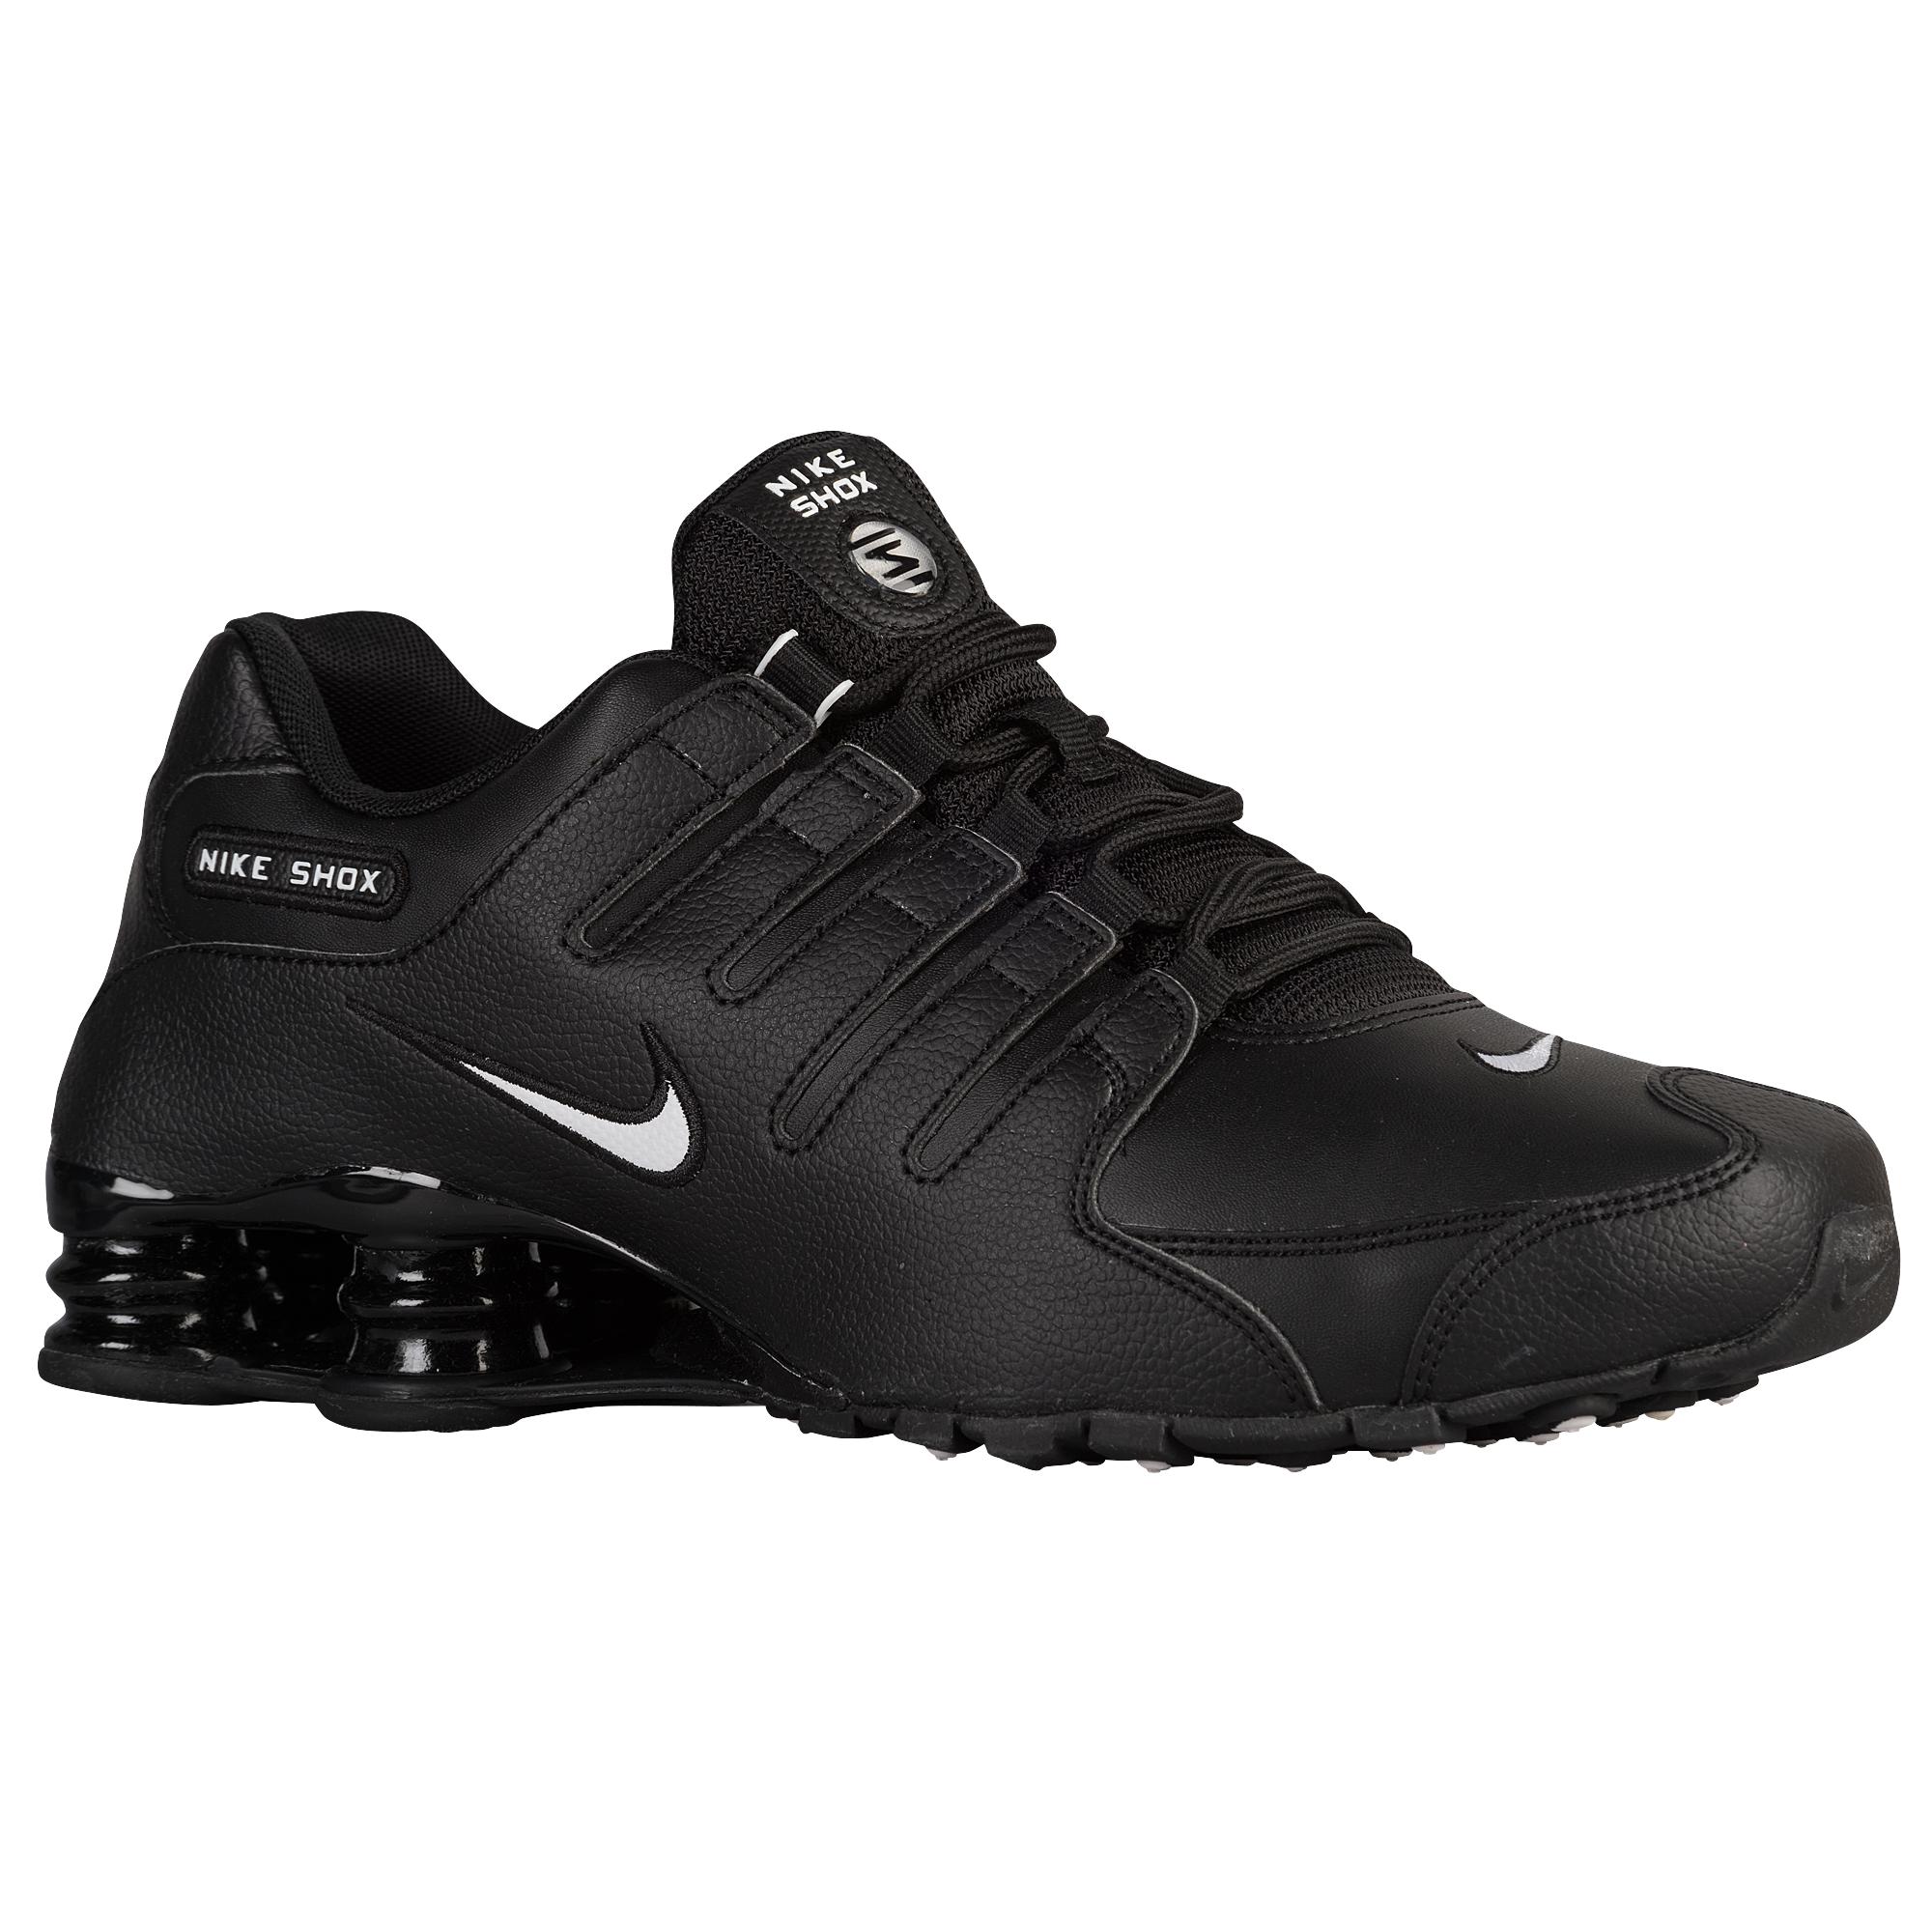 Nike Shox Running Shoe